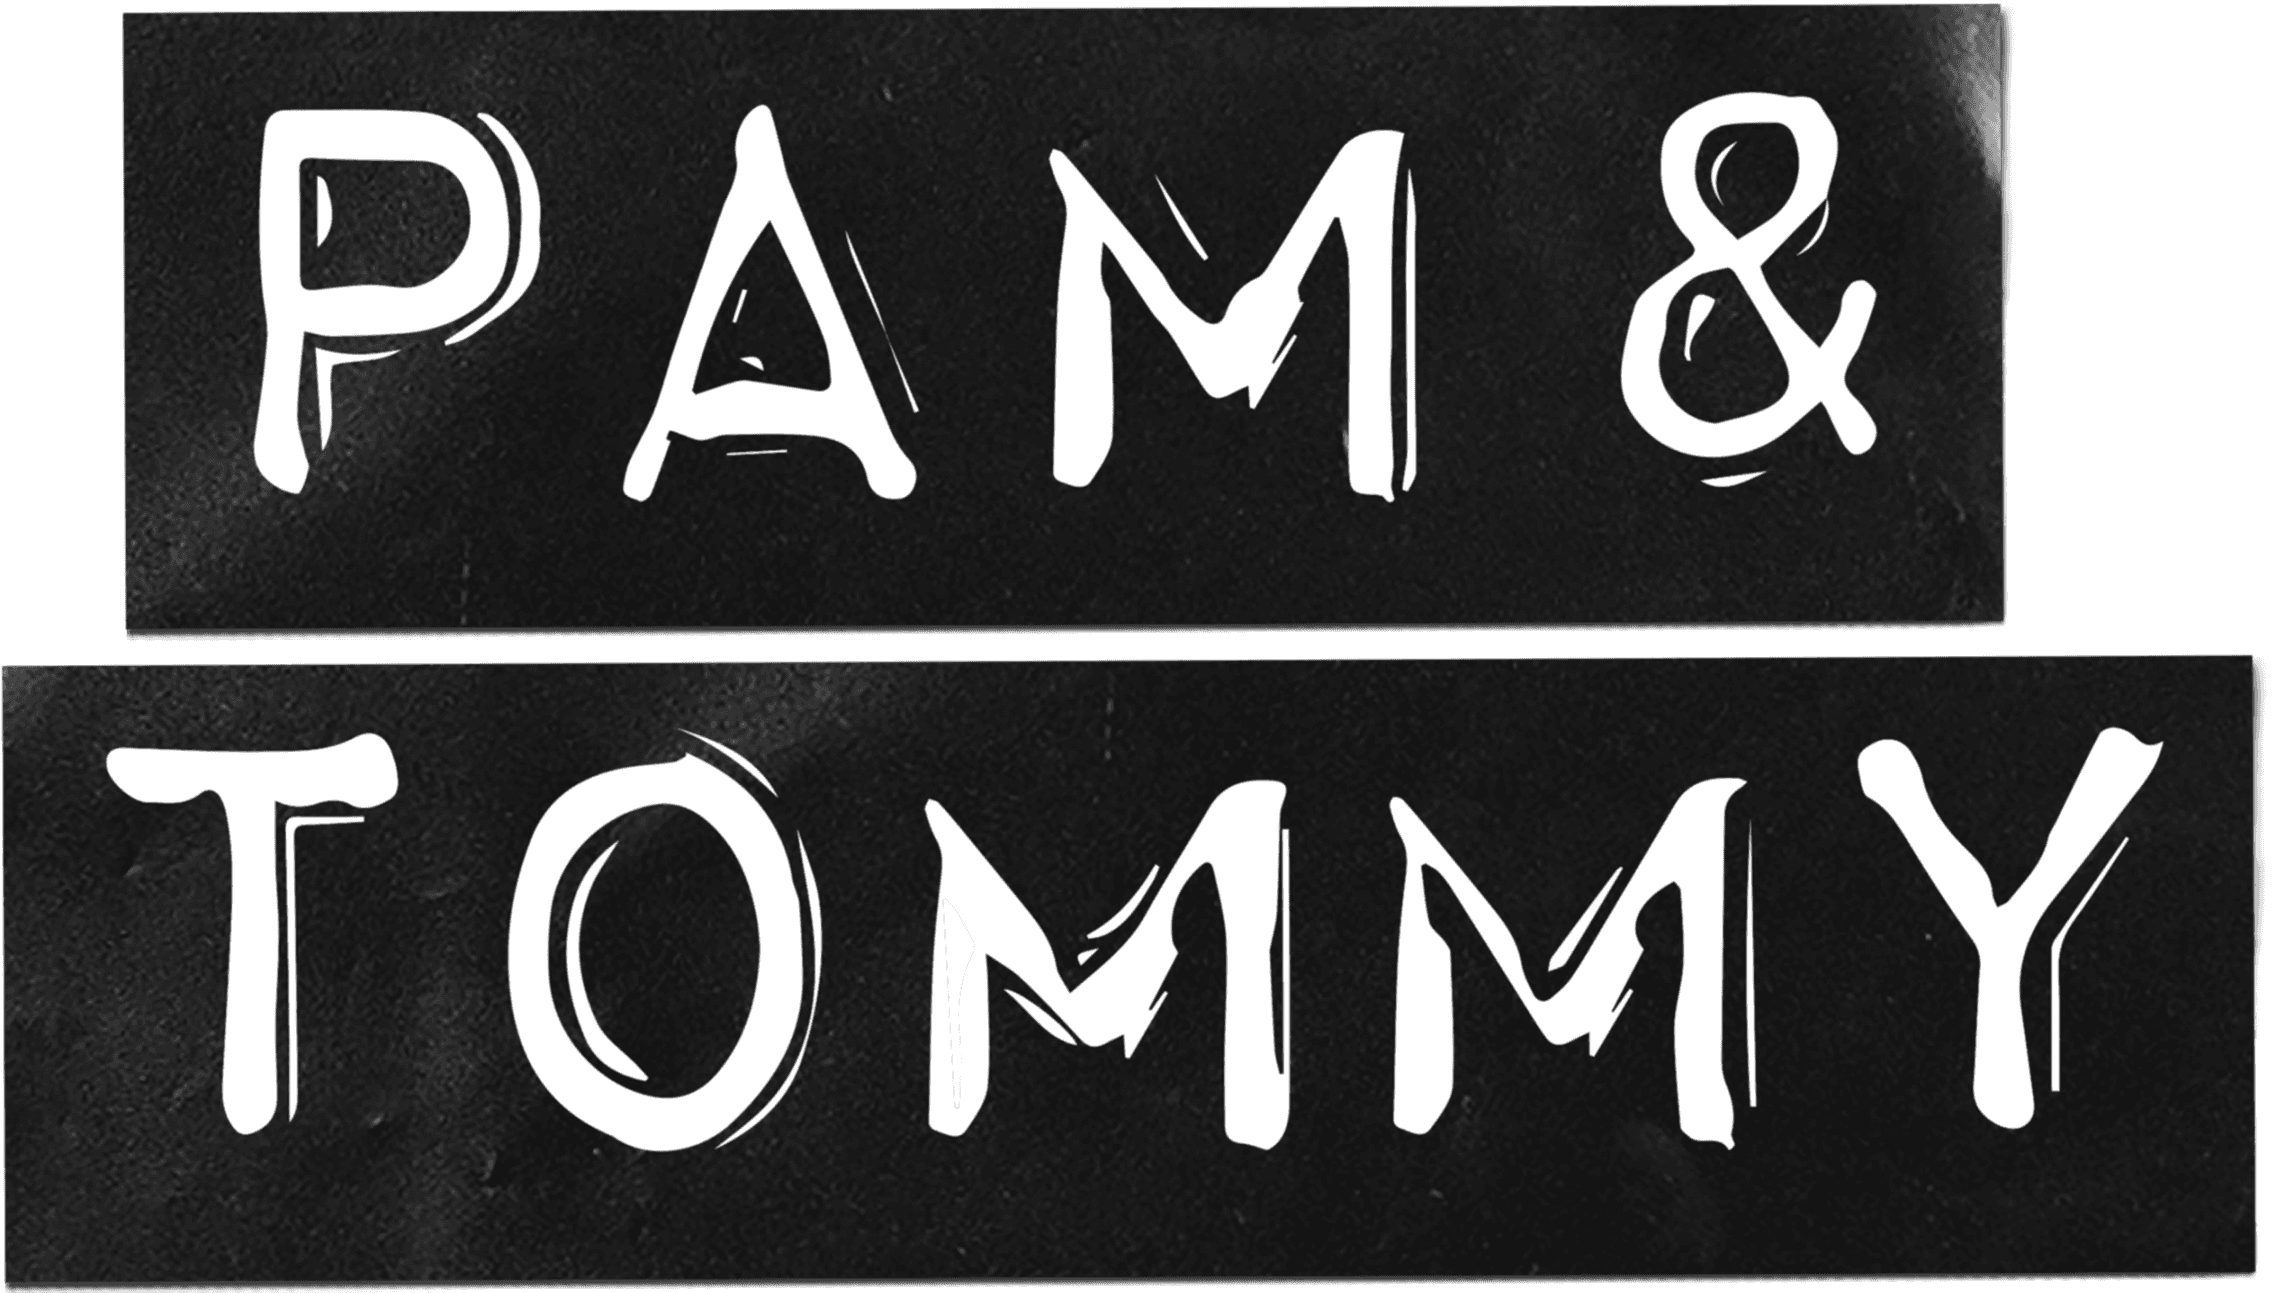 Pam & Tommy logo